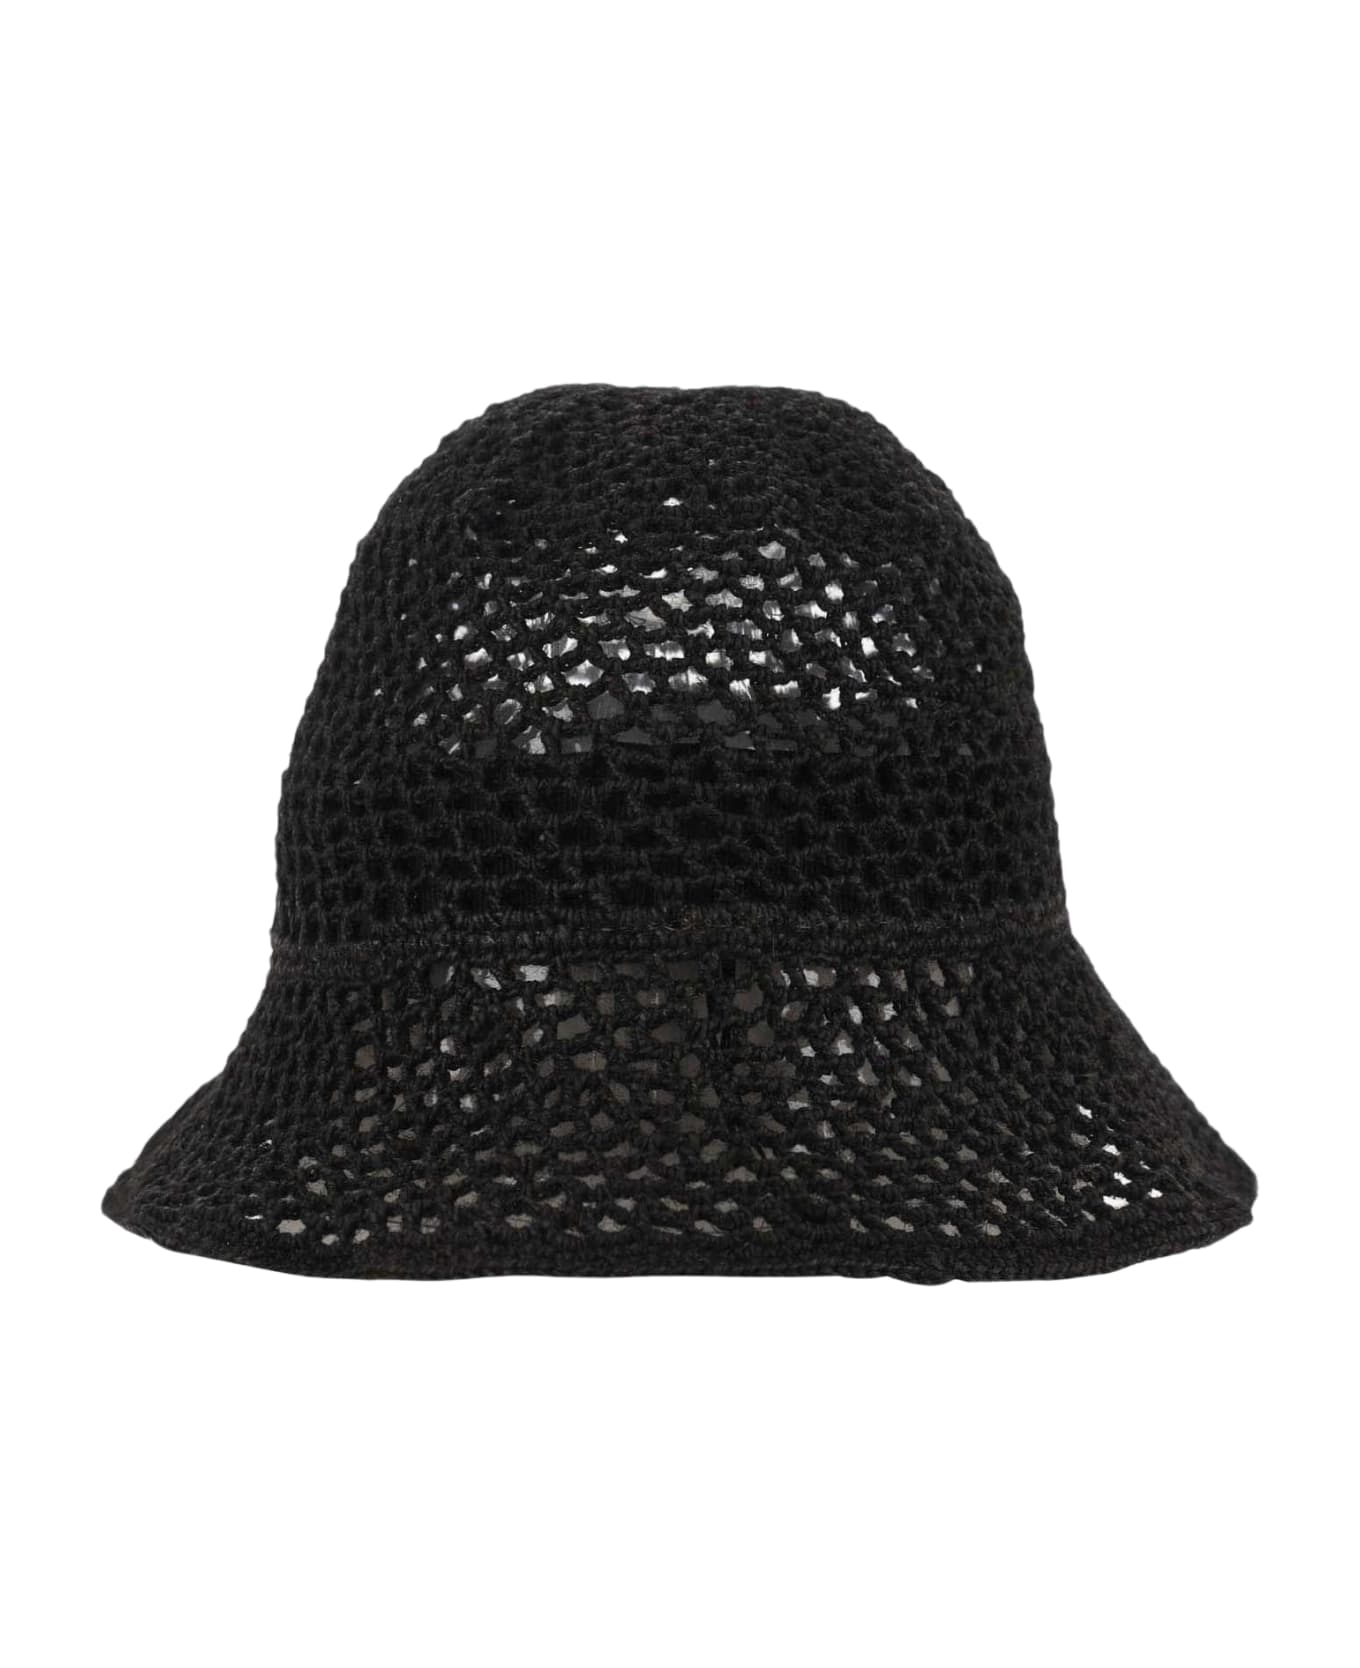 Reinhard Plank Mesh Bucket Hat - Black